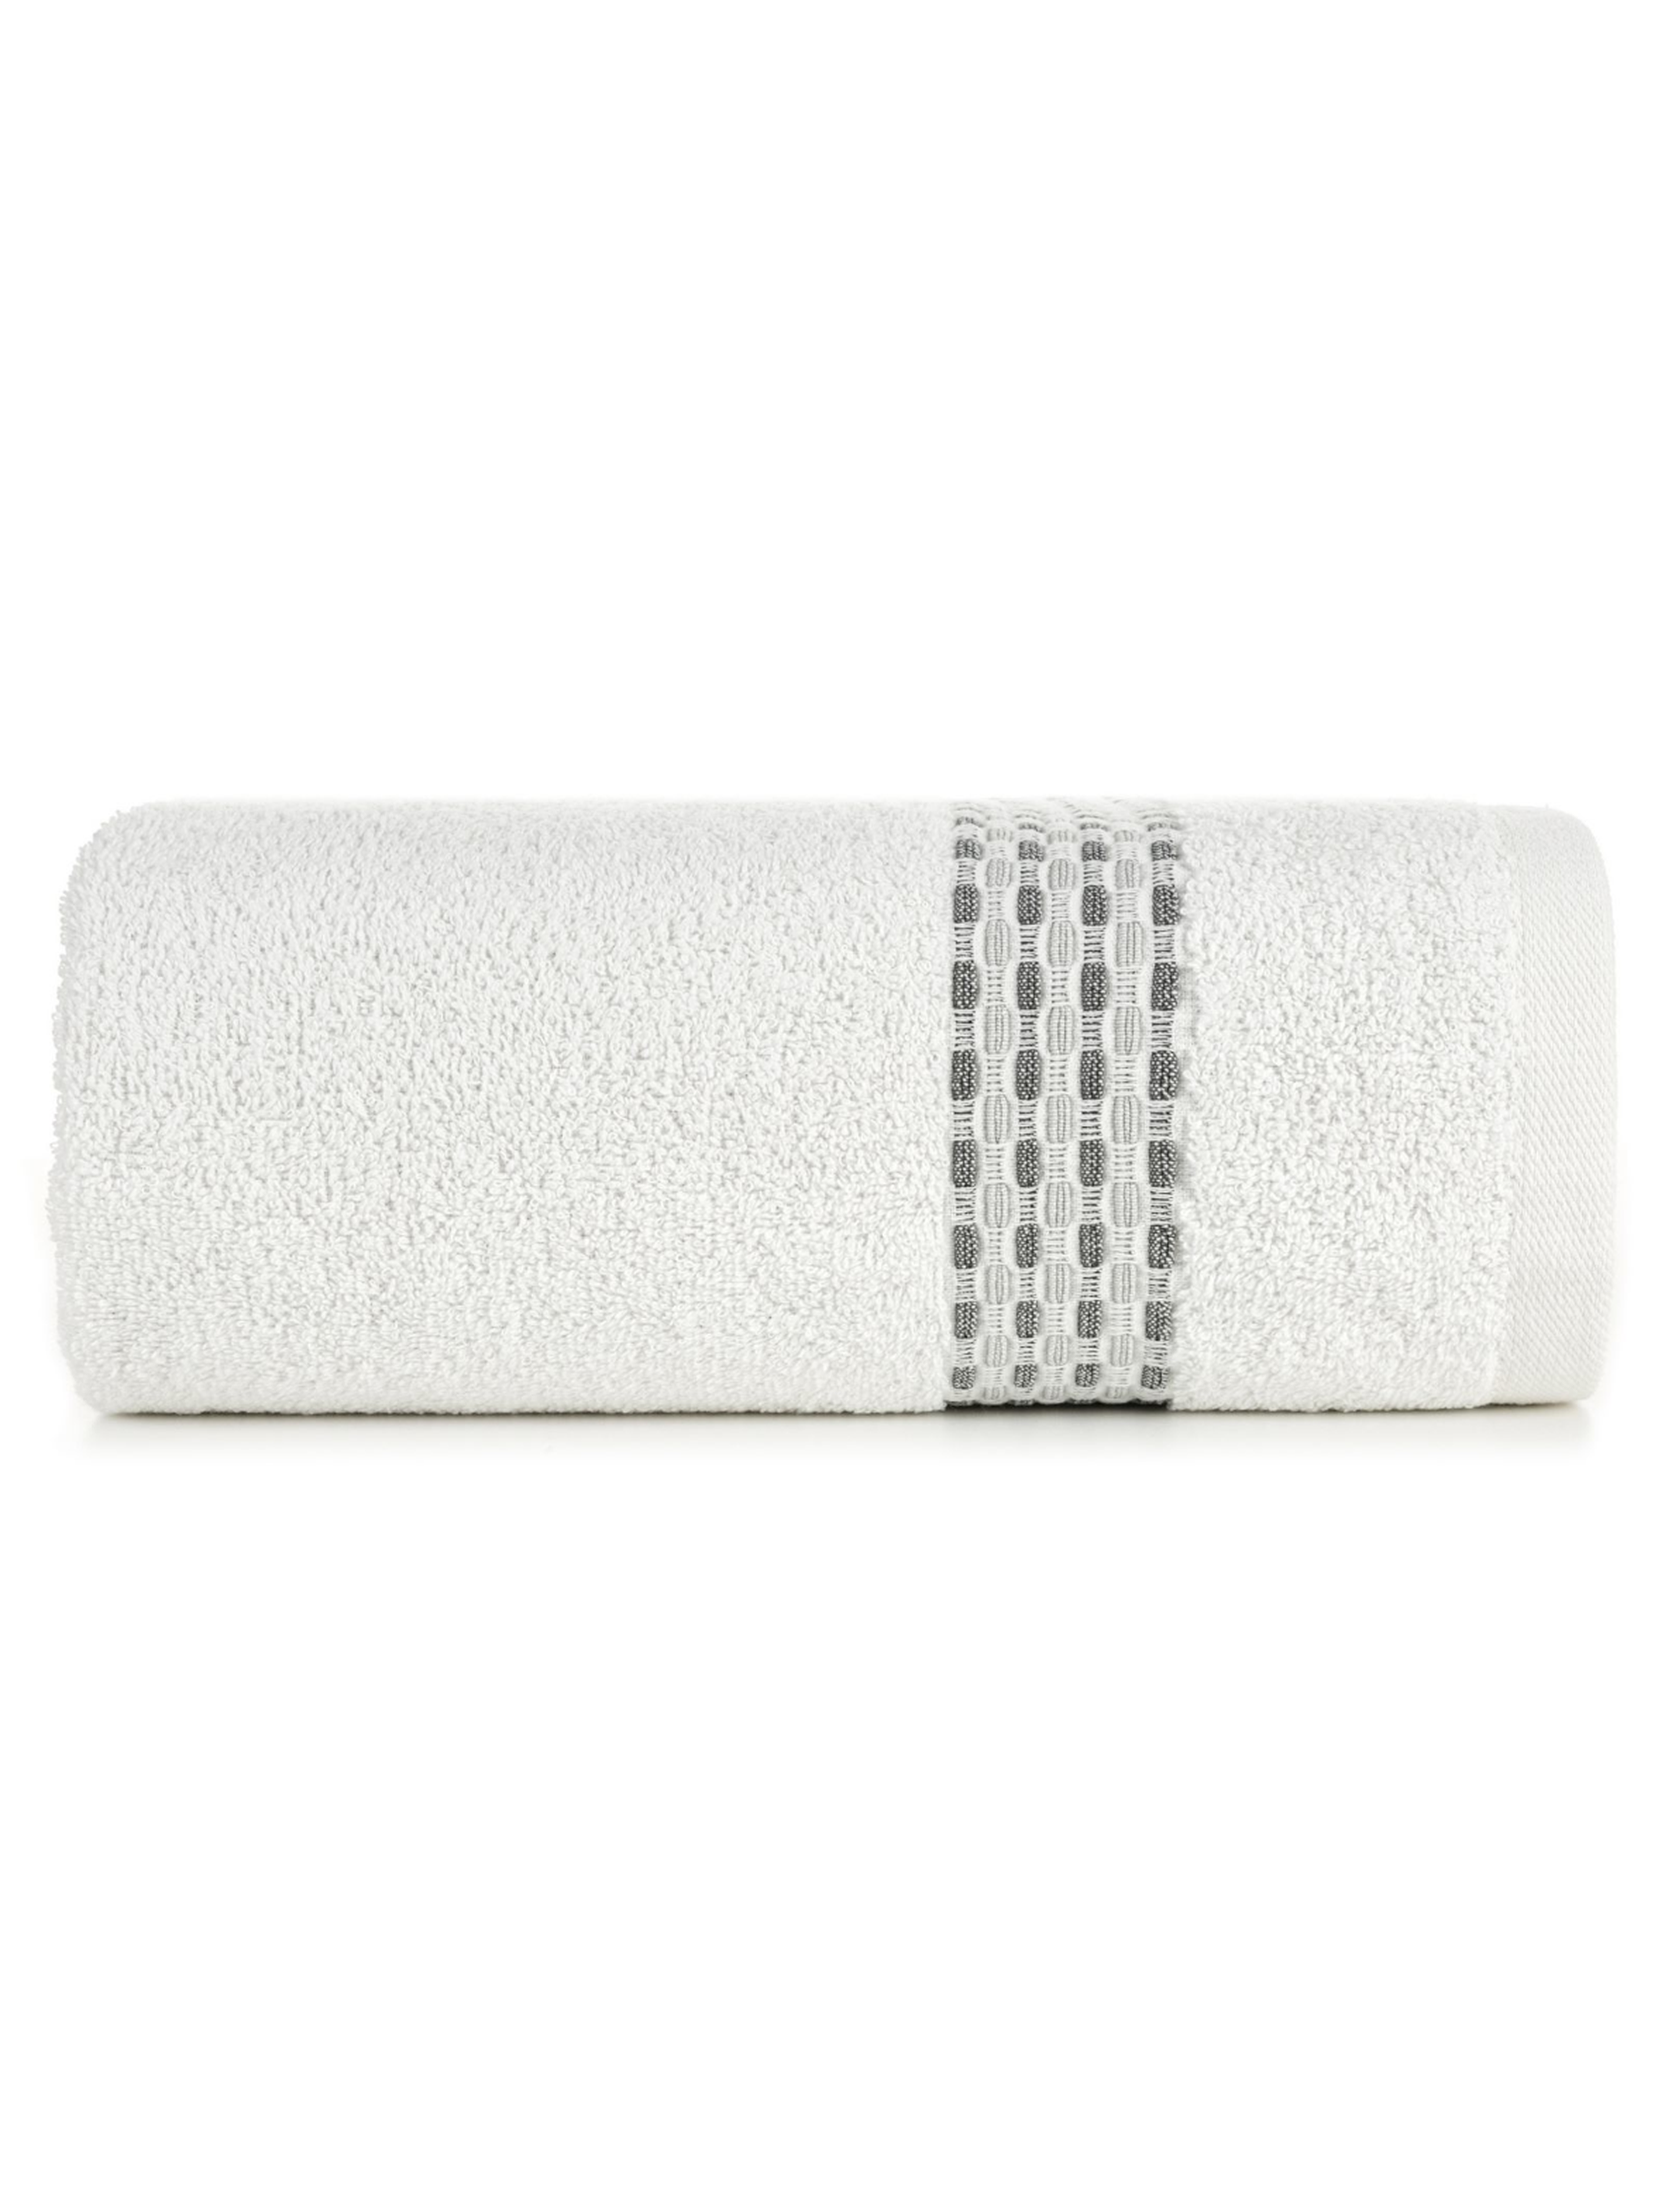 Biały ręcznik ze zdobieniami 50x90 cm